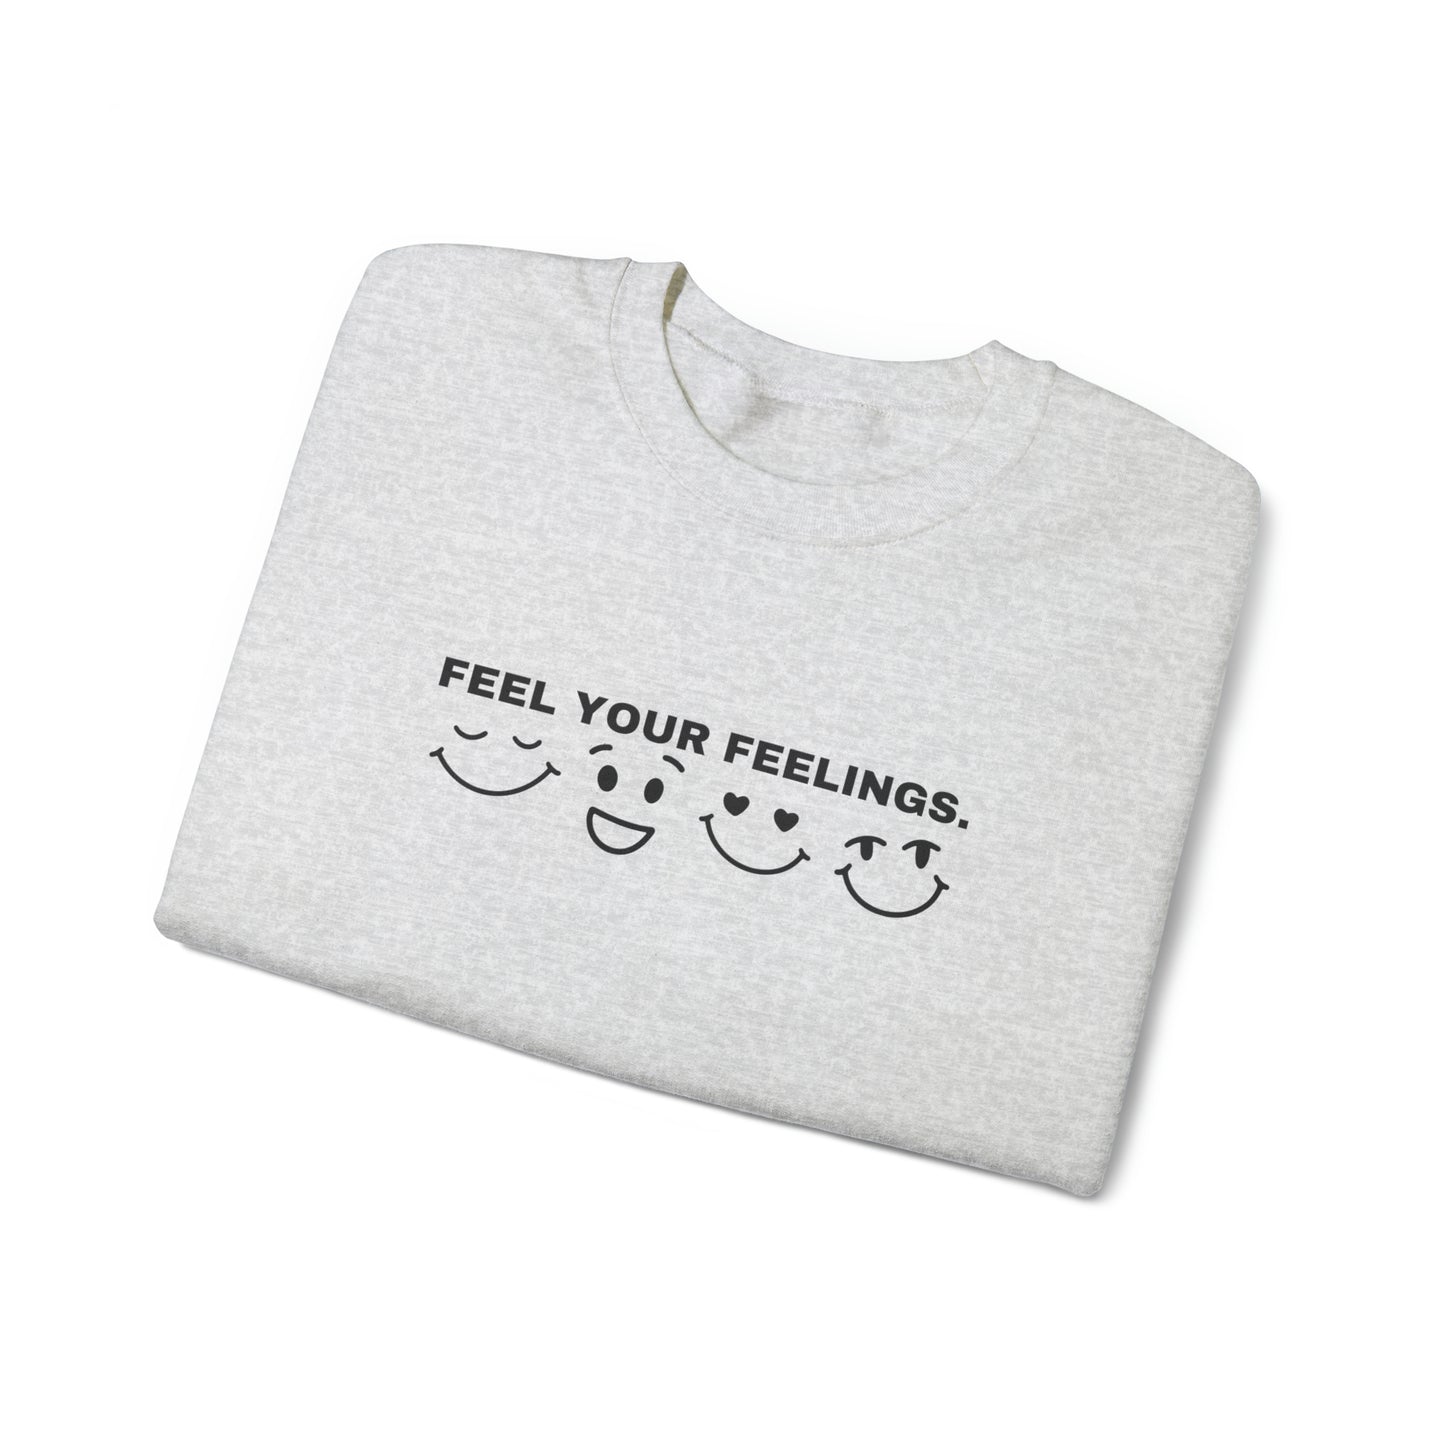 Feel your feelings Crewneck Sweatshirt